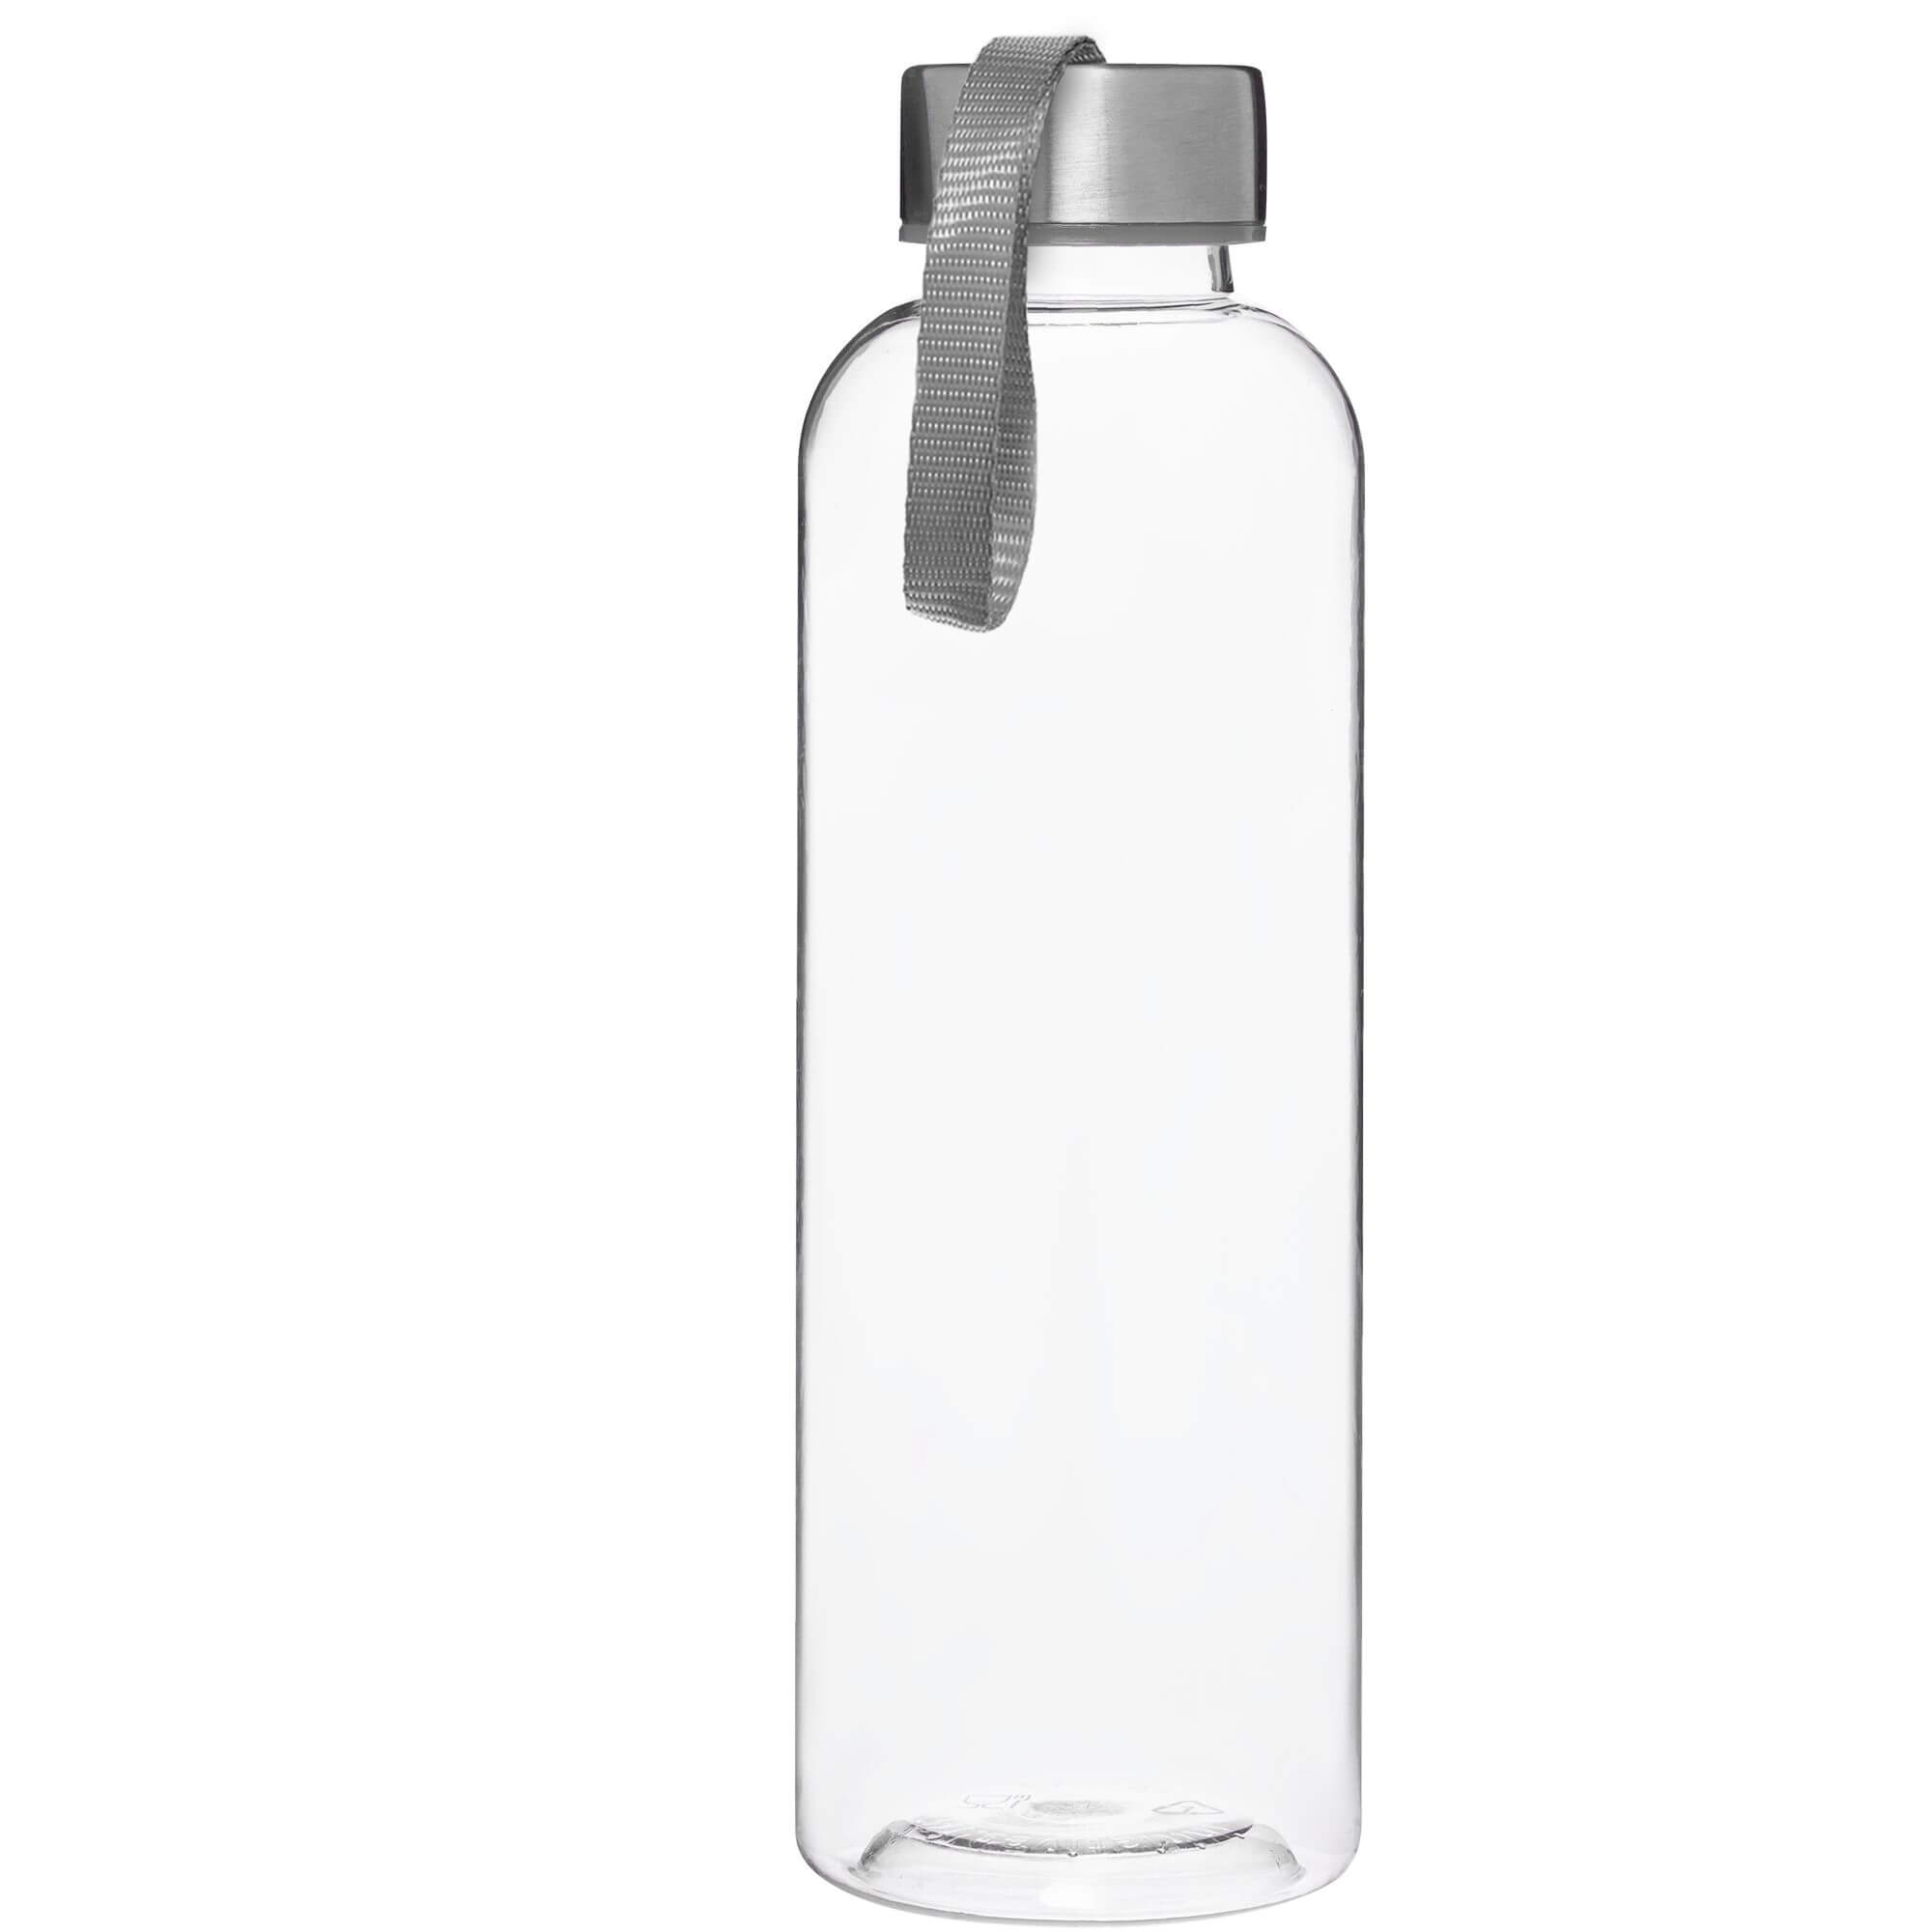 Бутылка для воды VERONA 550мл. Серая 6100.23